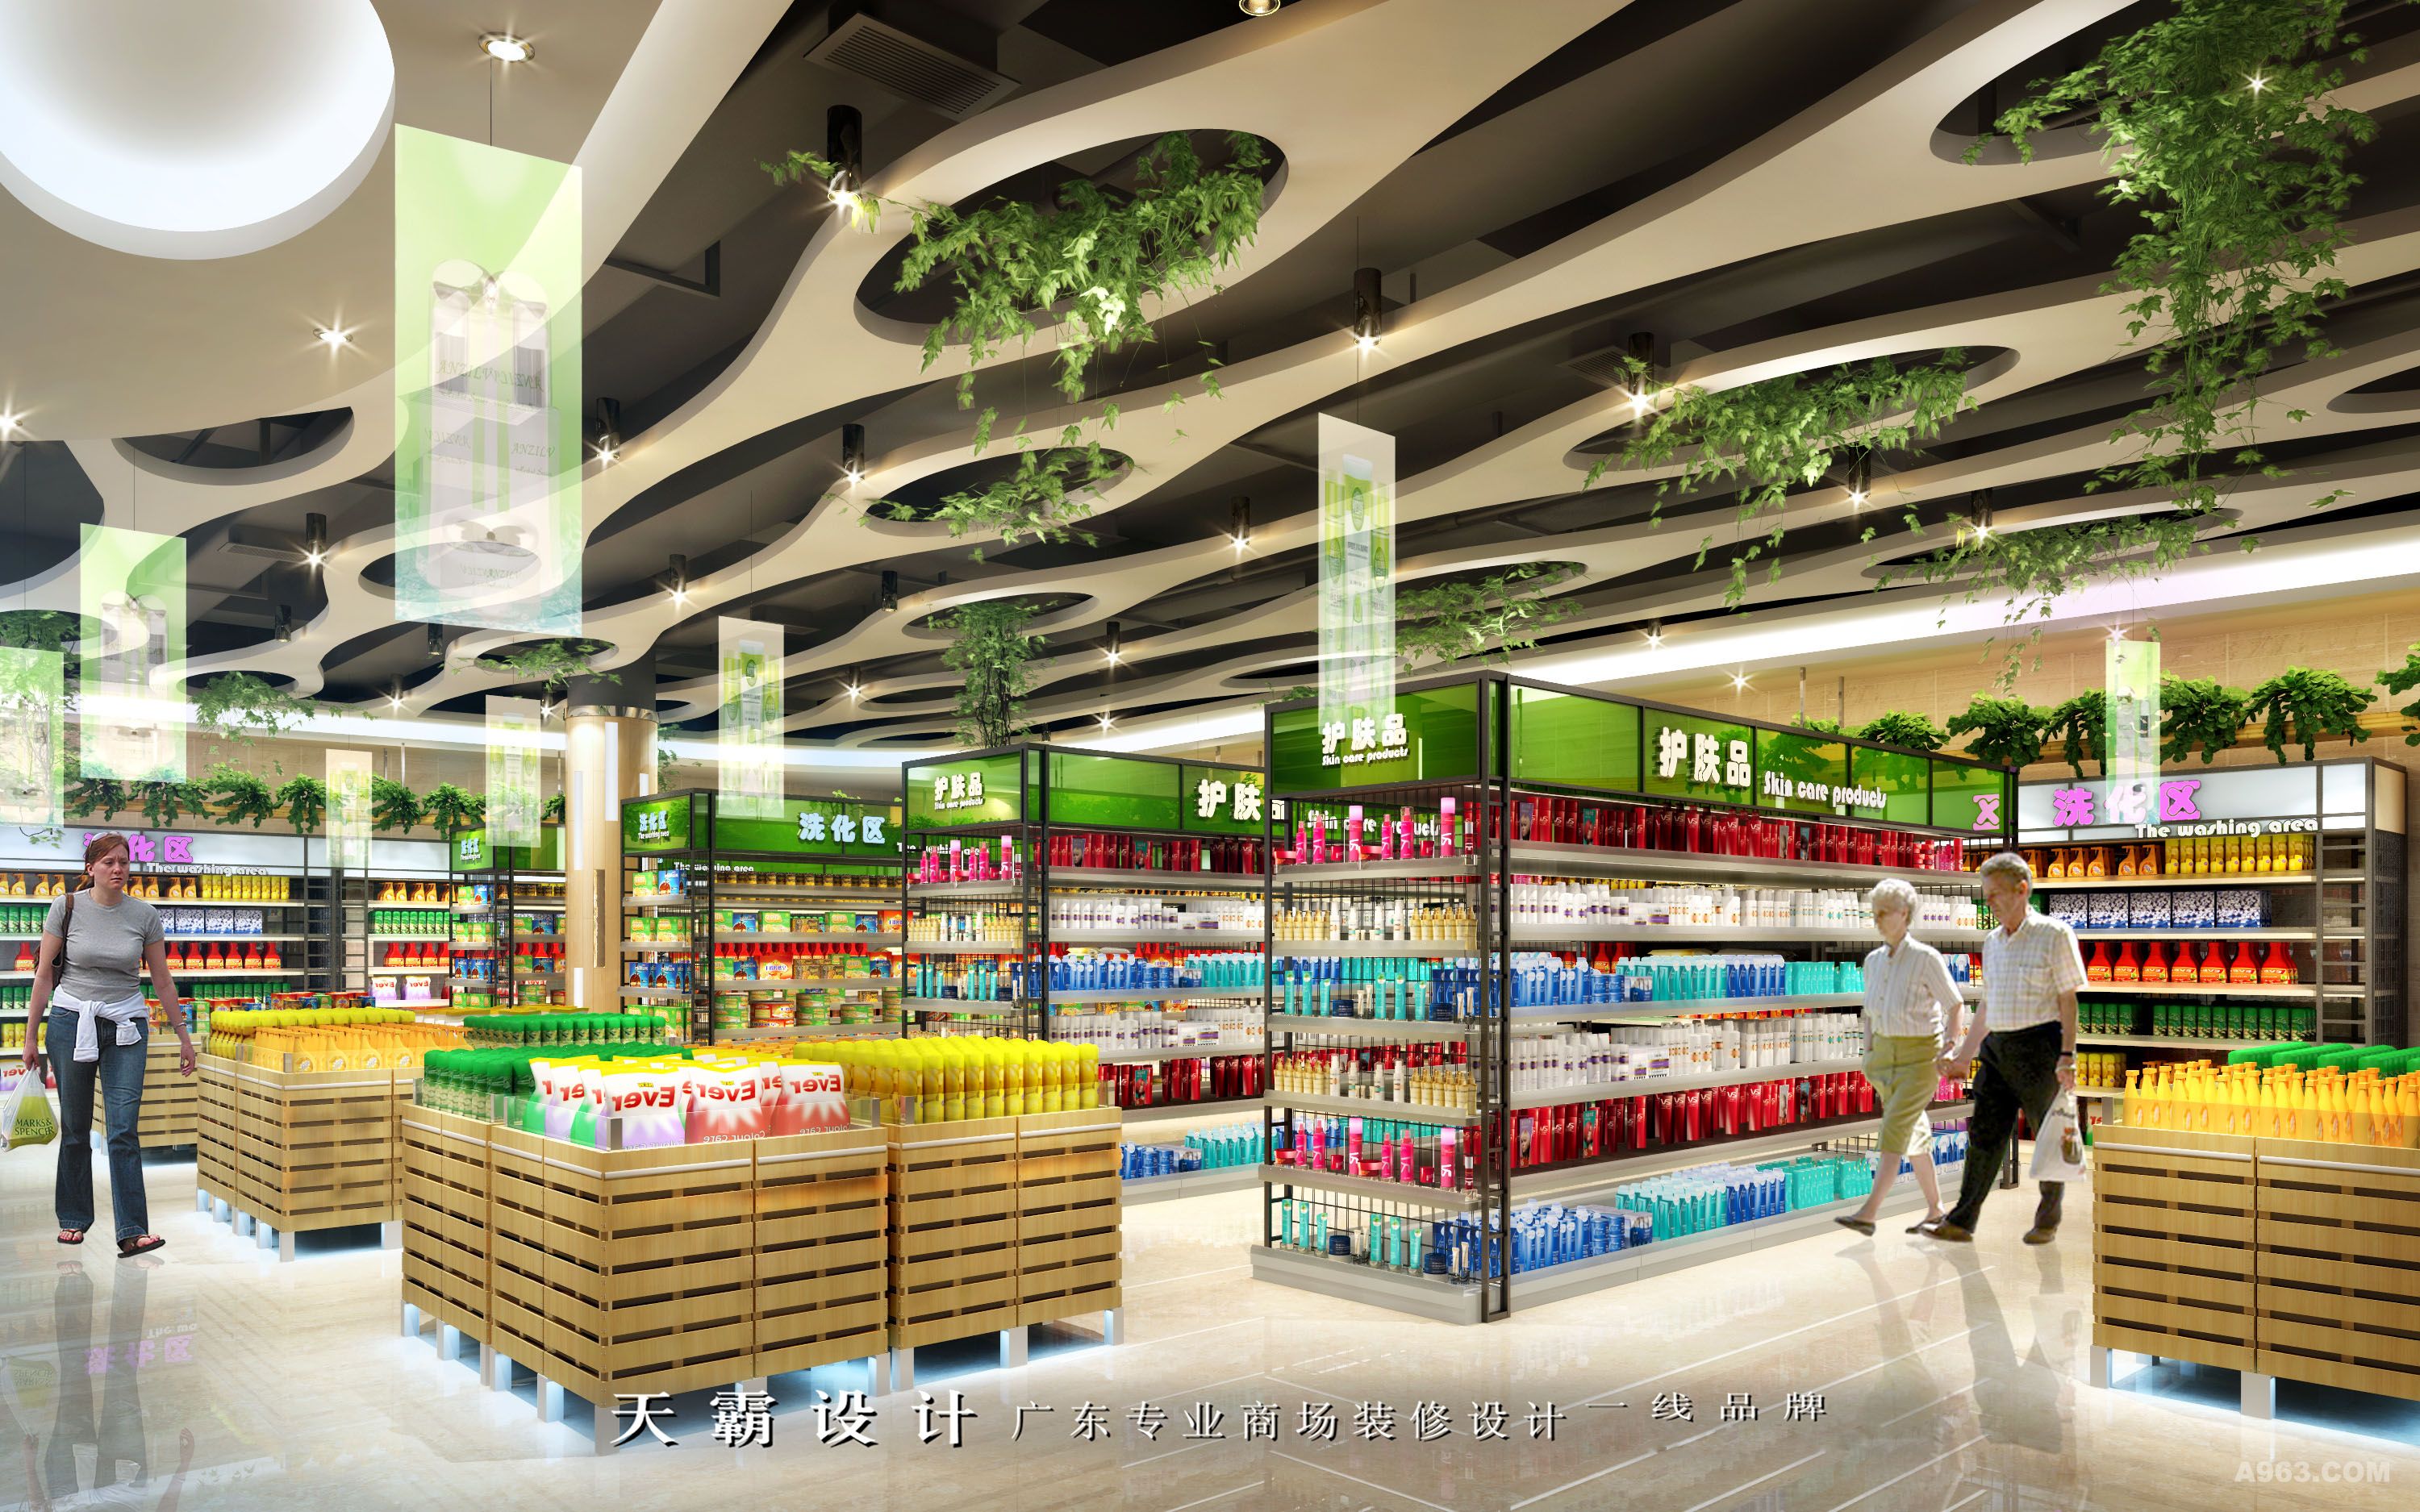 价值最大化的城市综合体装修设计效果图分享:河南焦作恒桥乐家超市